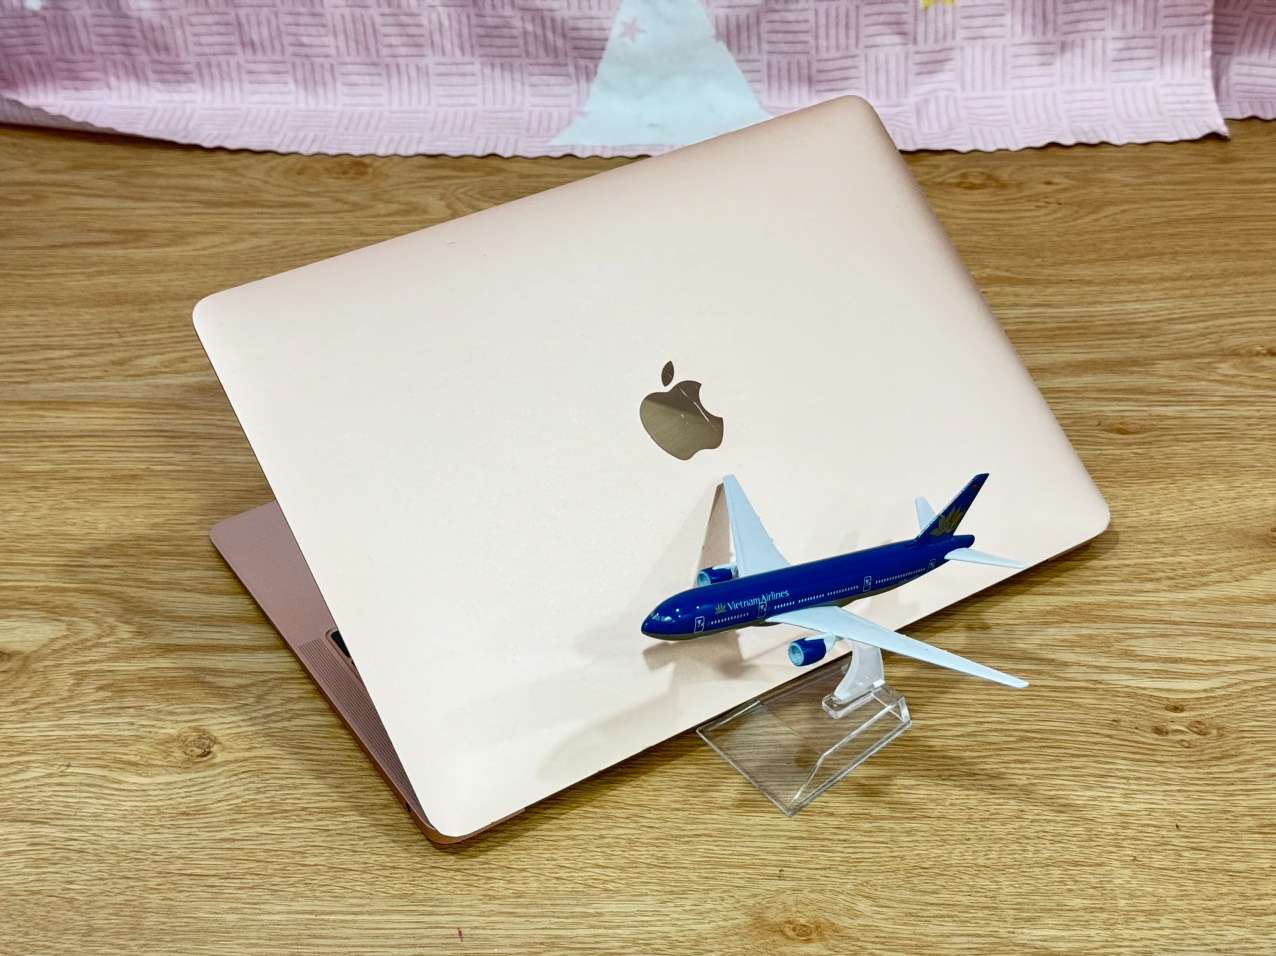 Macbook-air-2019-core-i5-ram-16gb-ssd-256gb-gold-laptop-doanh-nhan-laptopthienan